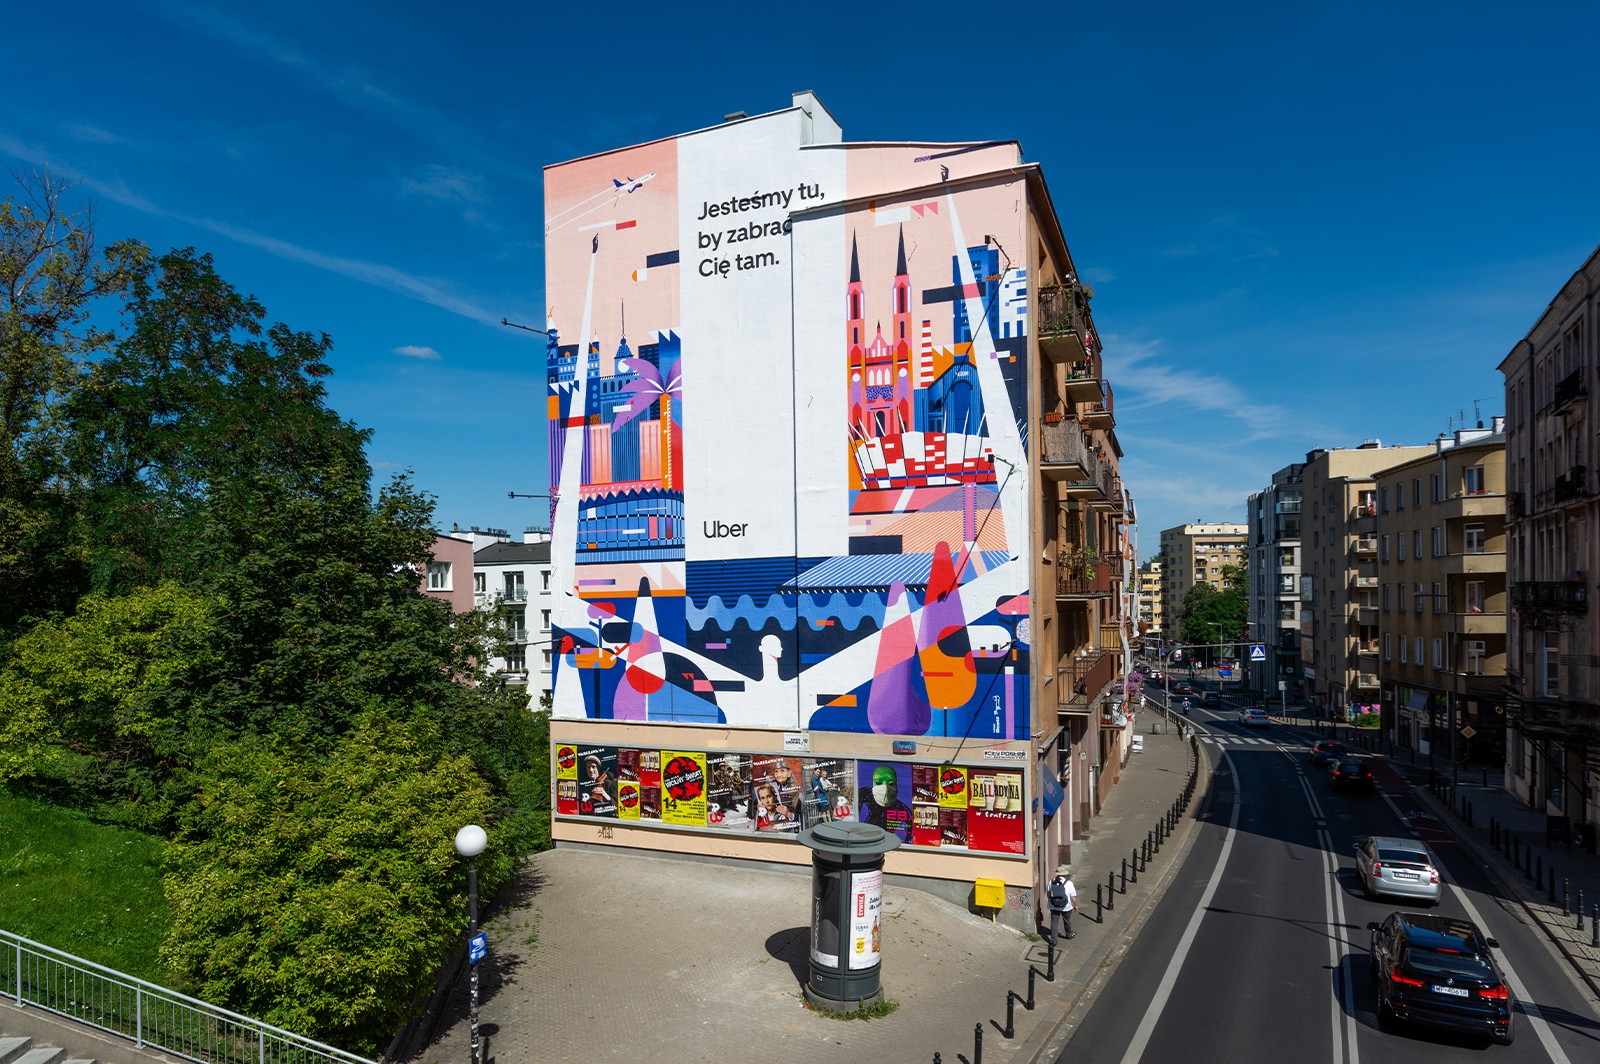 Uber mural on Tamka street in Warsaw | Jesteśmy tu, by zabrać Cię tam. | Portfolio